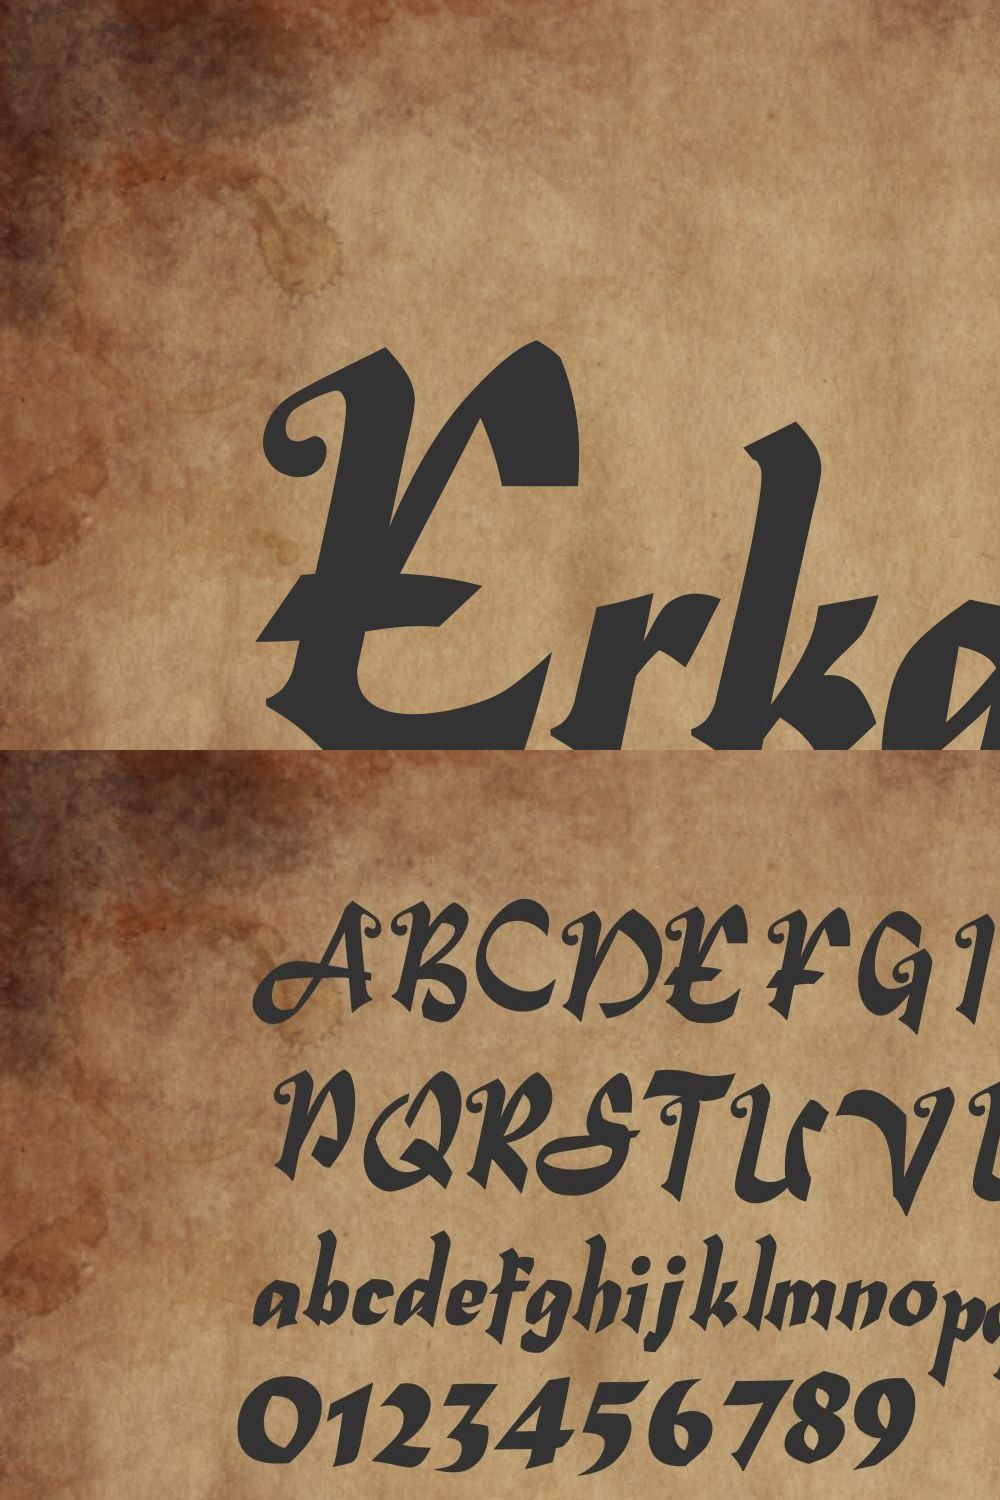 Erkanth - Blackletter Font pinterest preview image.